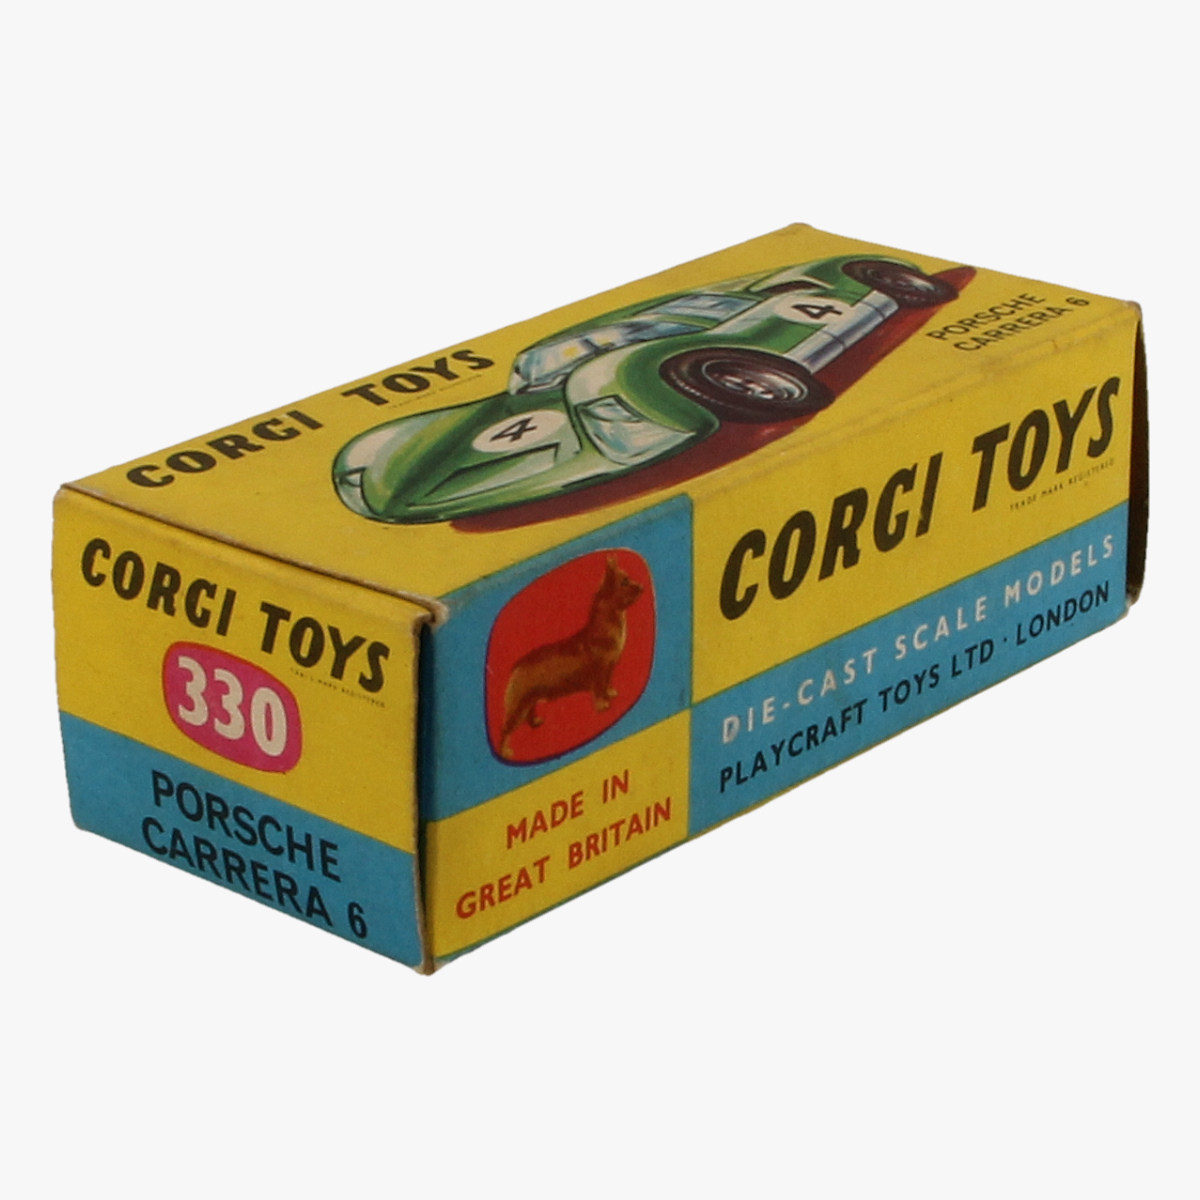 Afbeeldingen van Corgi Toys, Porsche Carrera 6,330.